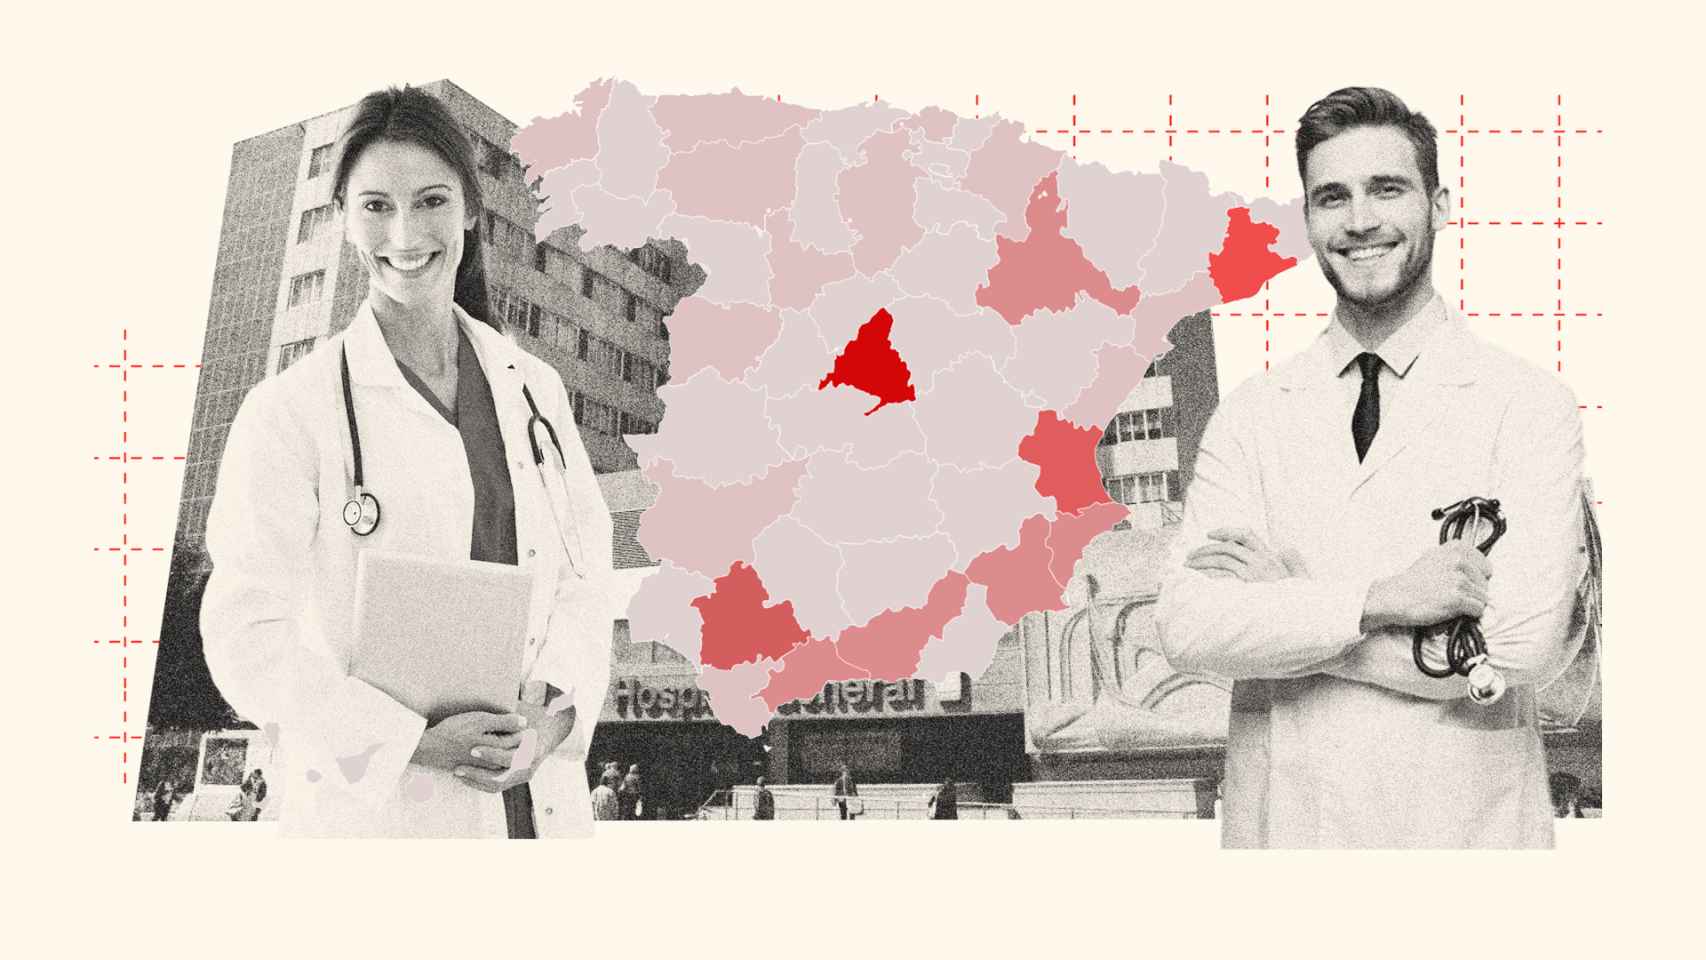 El mapa definitivo del MIR: de la provincia repudiada a los hospitales elegidos por los mejores